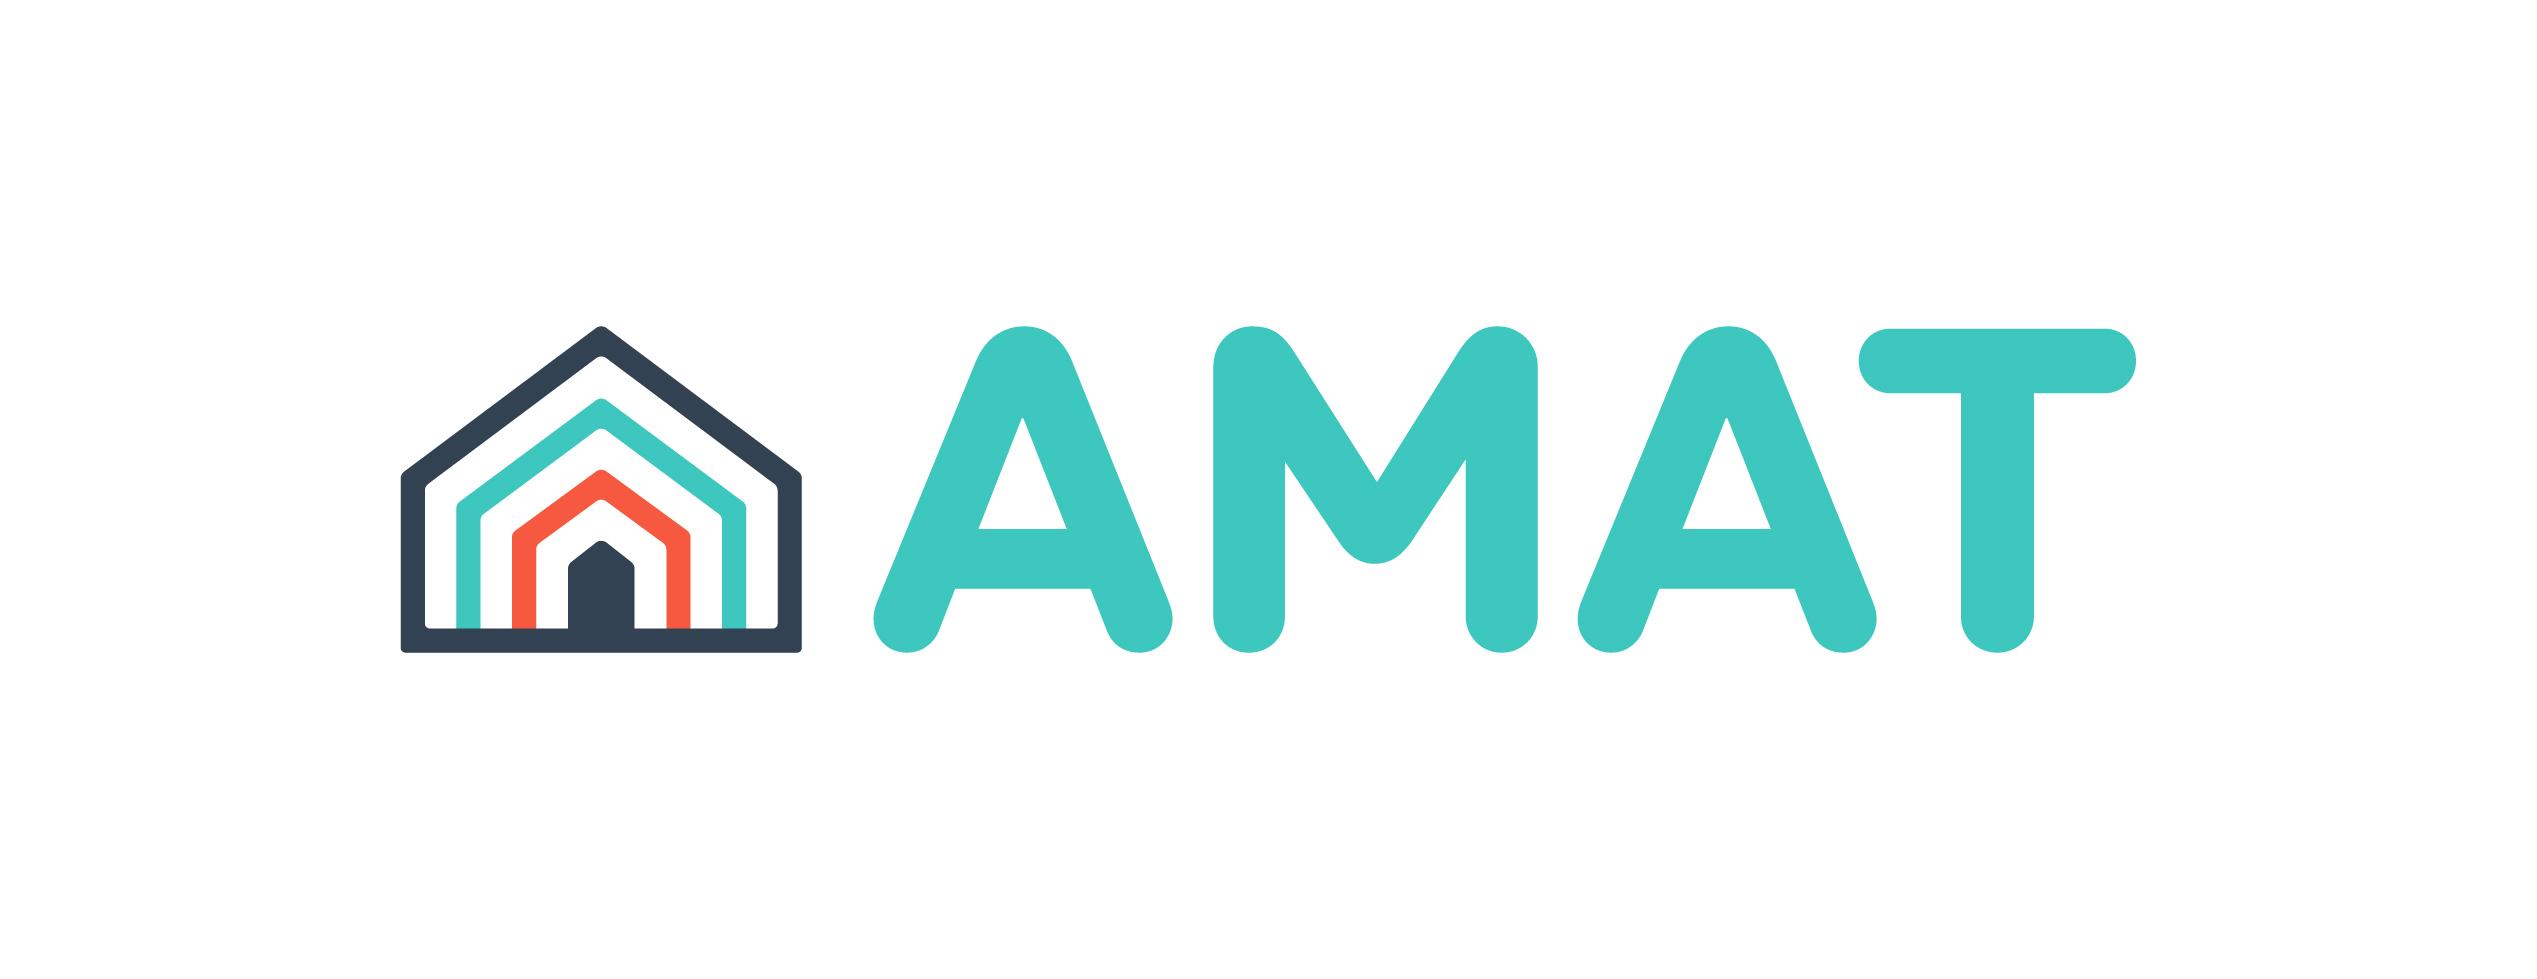 Amat Logo - AMATHome